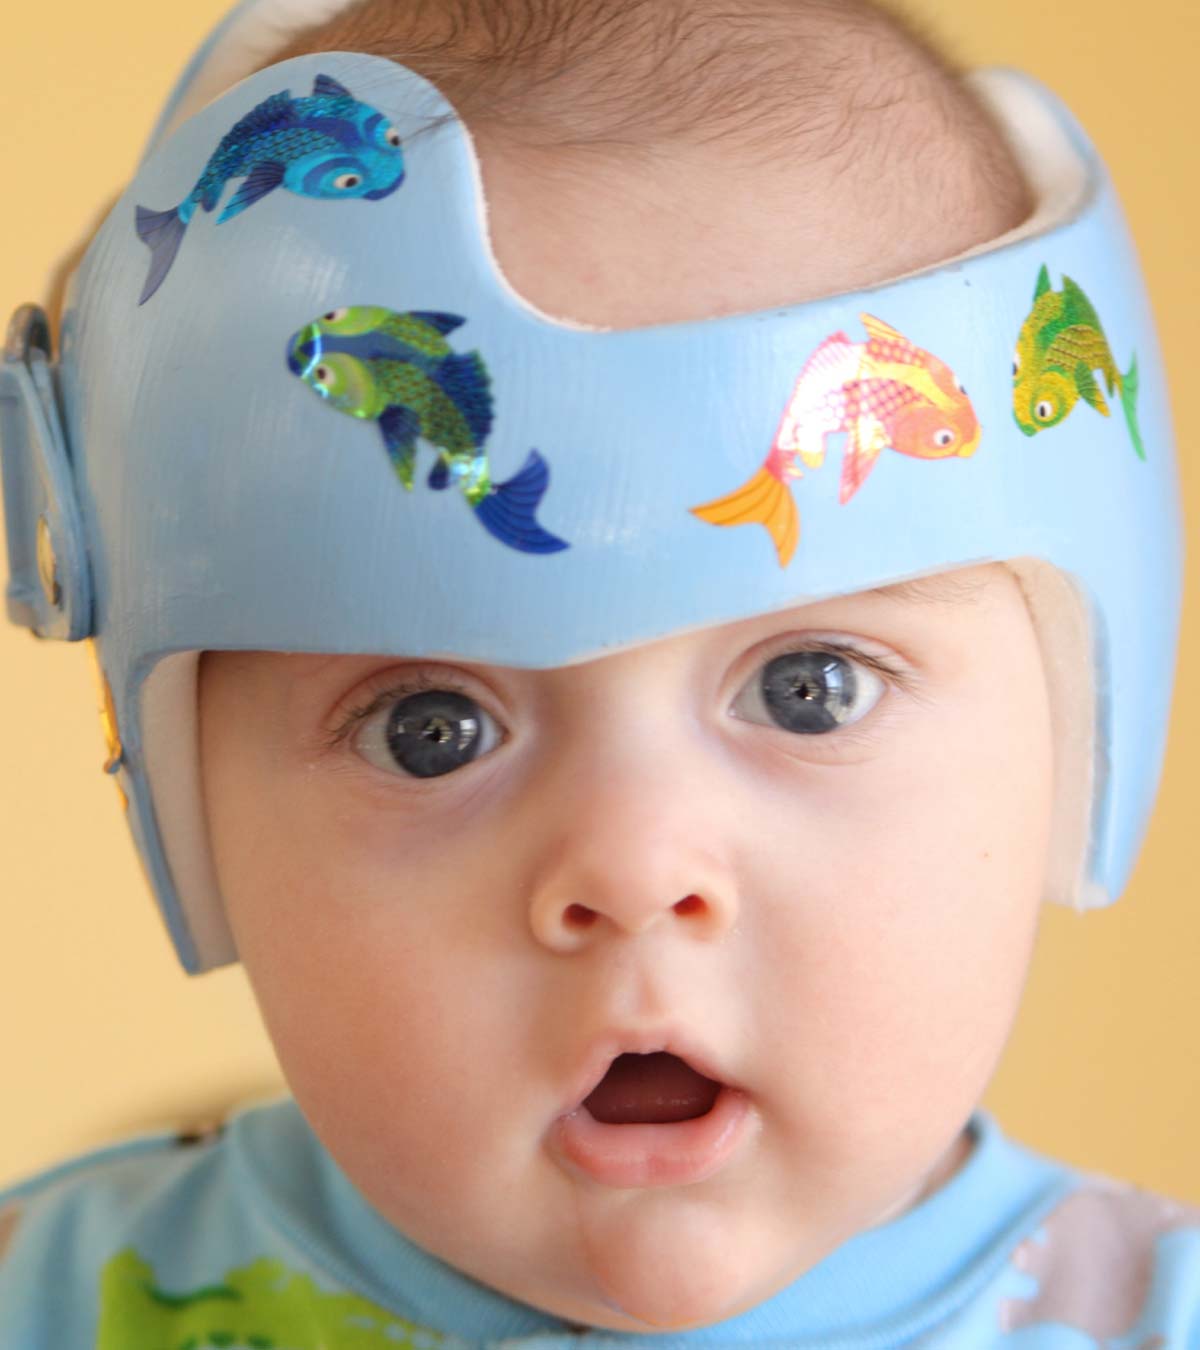 为什么婴儿要戴头盔?应该戴多长时间